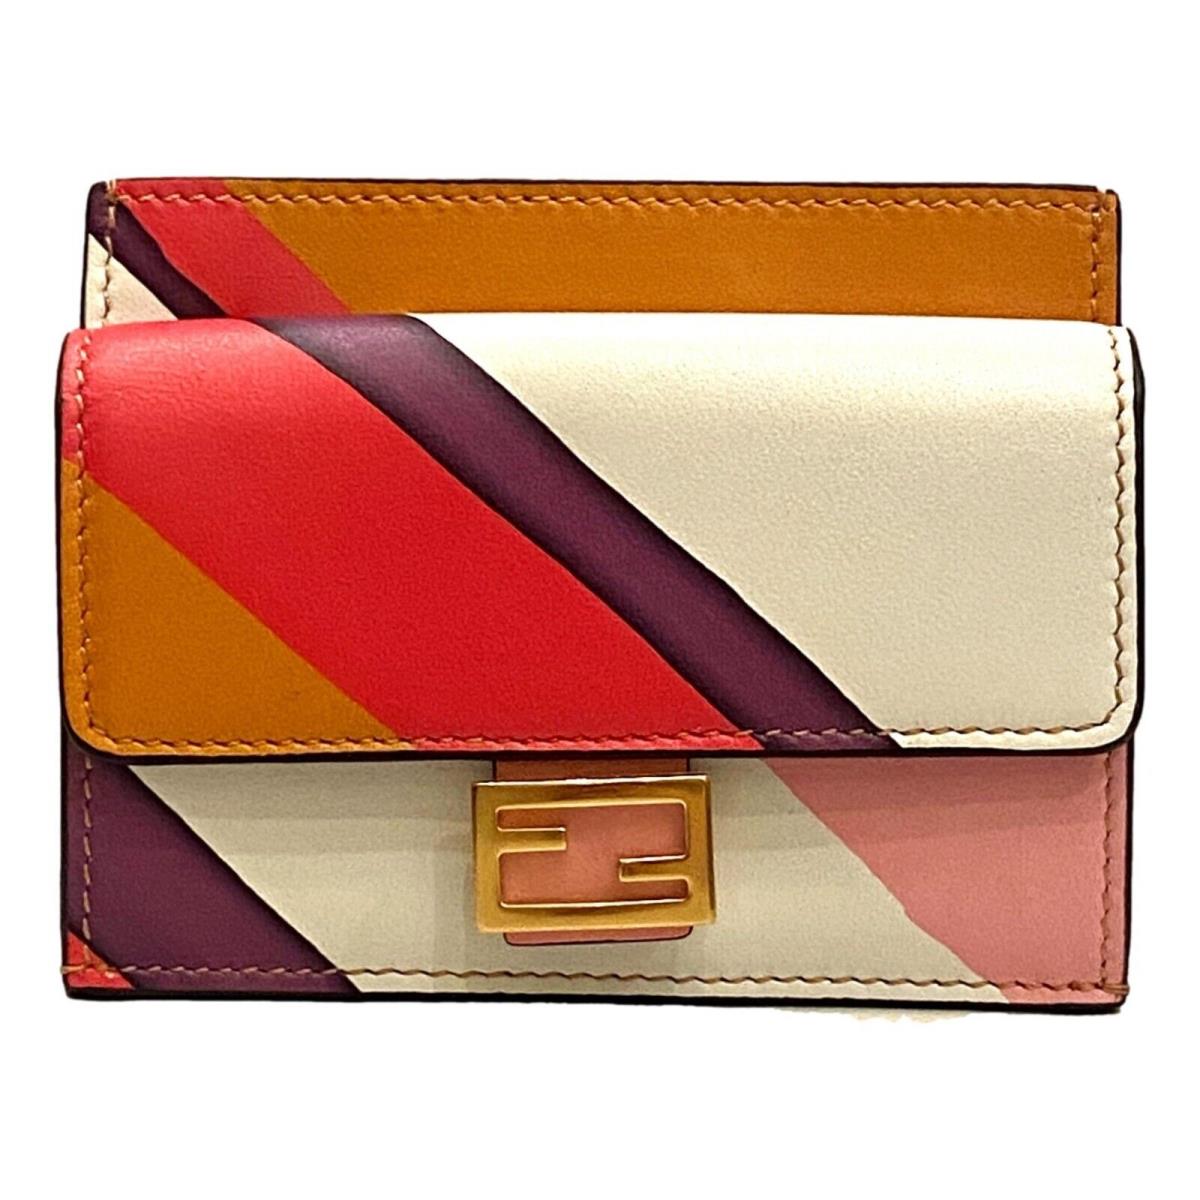 Fendi Baguette Hot Pink Stripe Leather Card Holder Wallet 8M0423